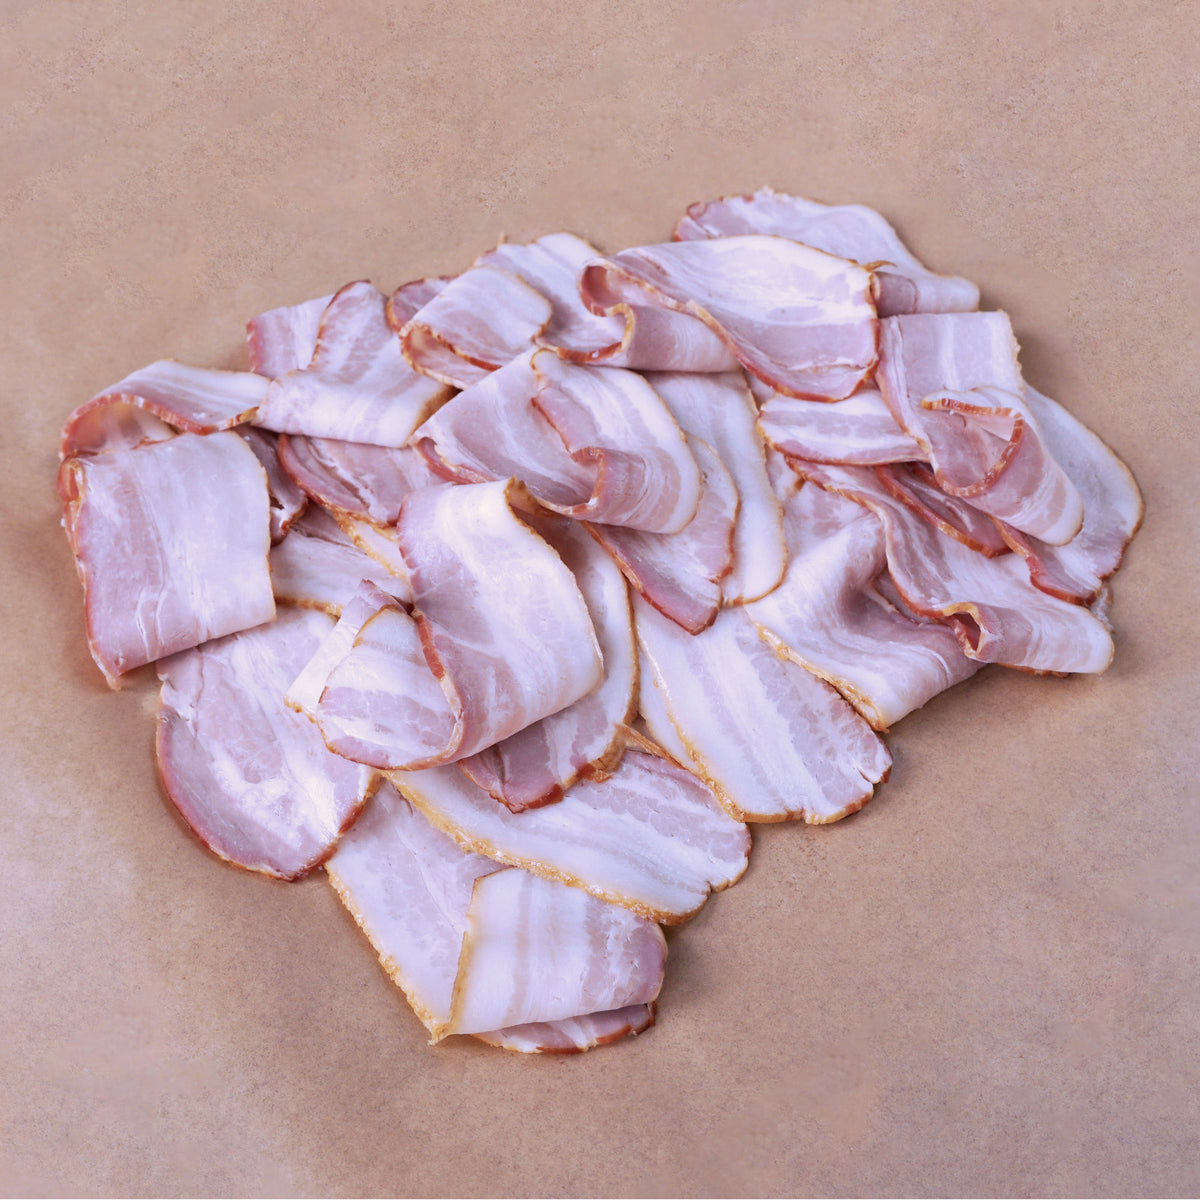 無添加 香辛料不使用 砂糖不使用 放牧豚 スモーク アメリカンスタイル ベーコン スライス (200g) ホライズンファームズ